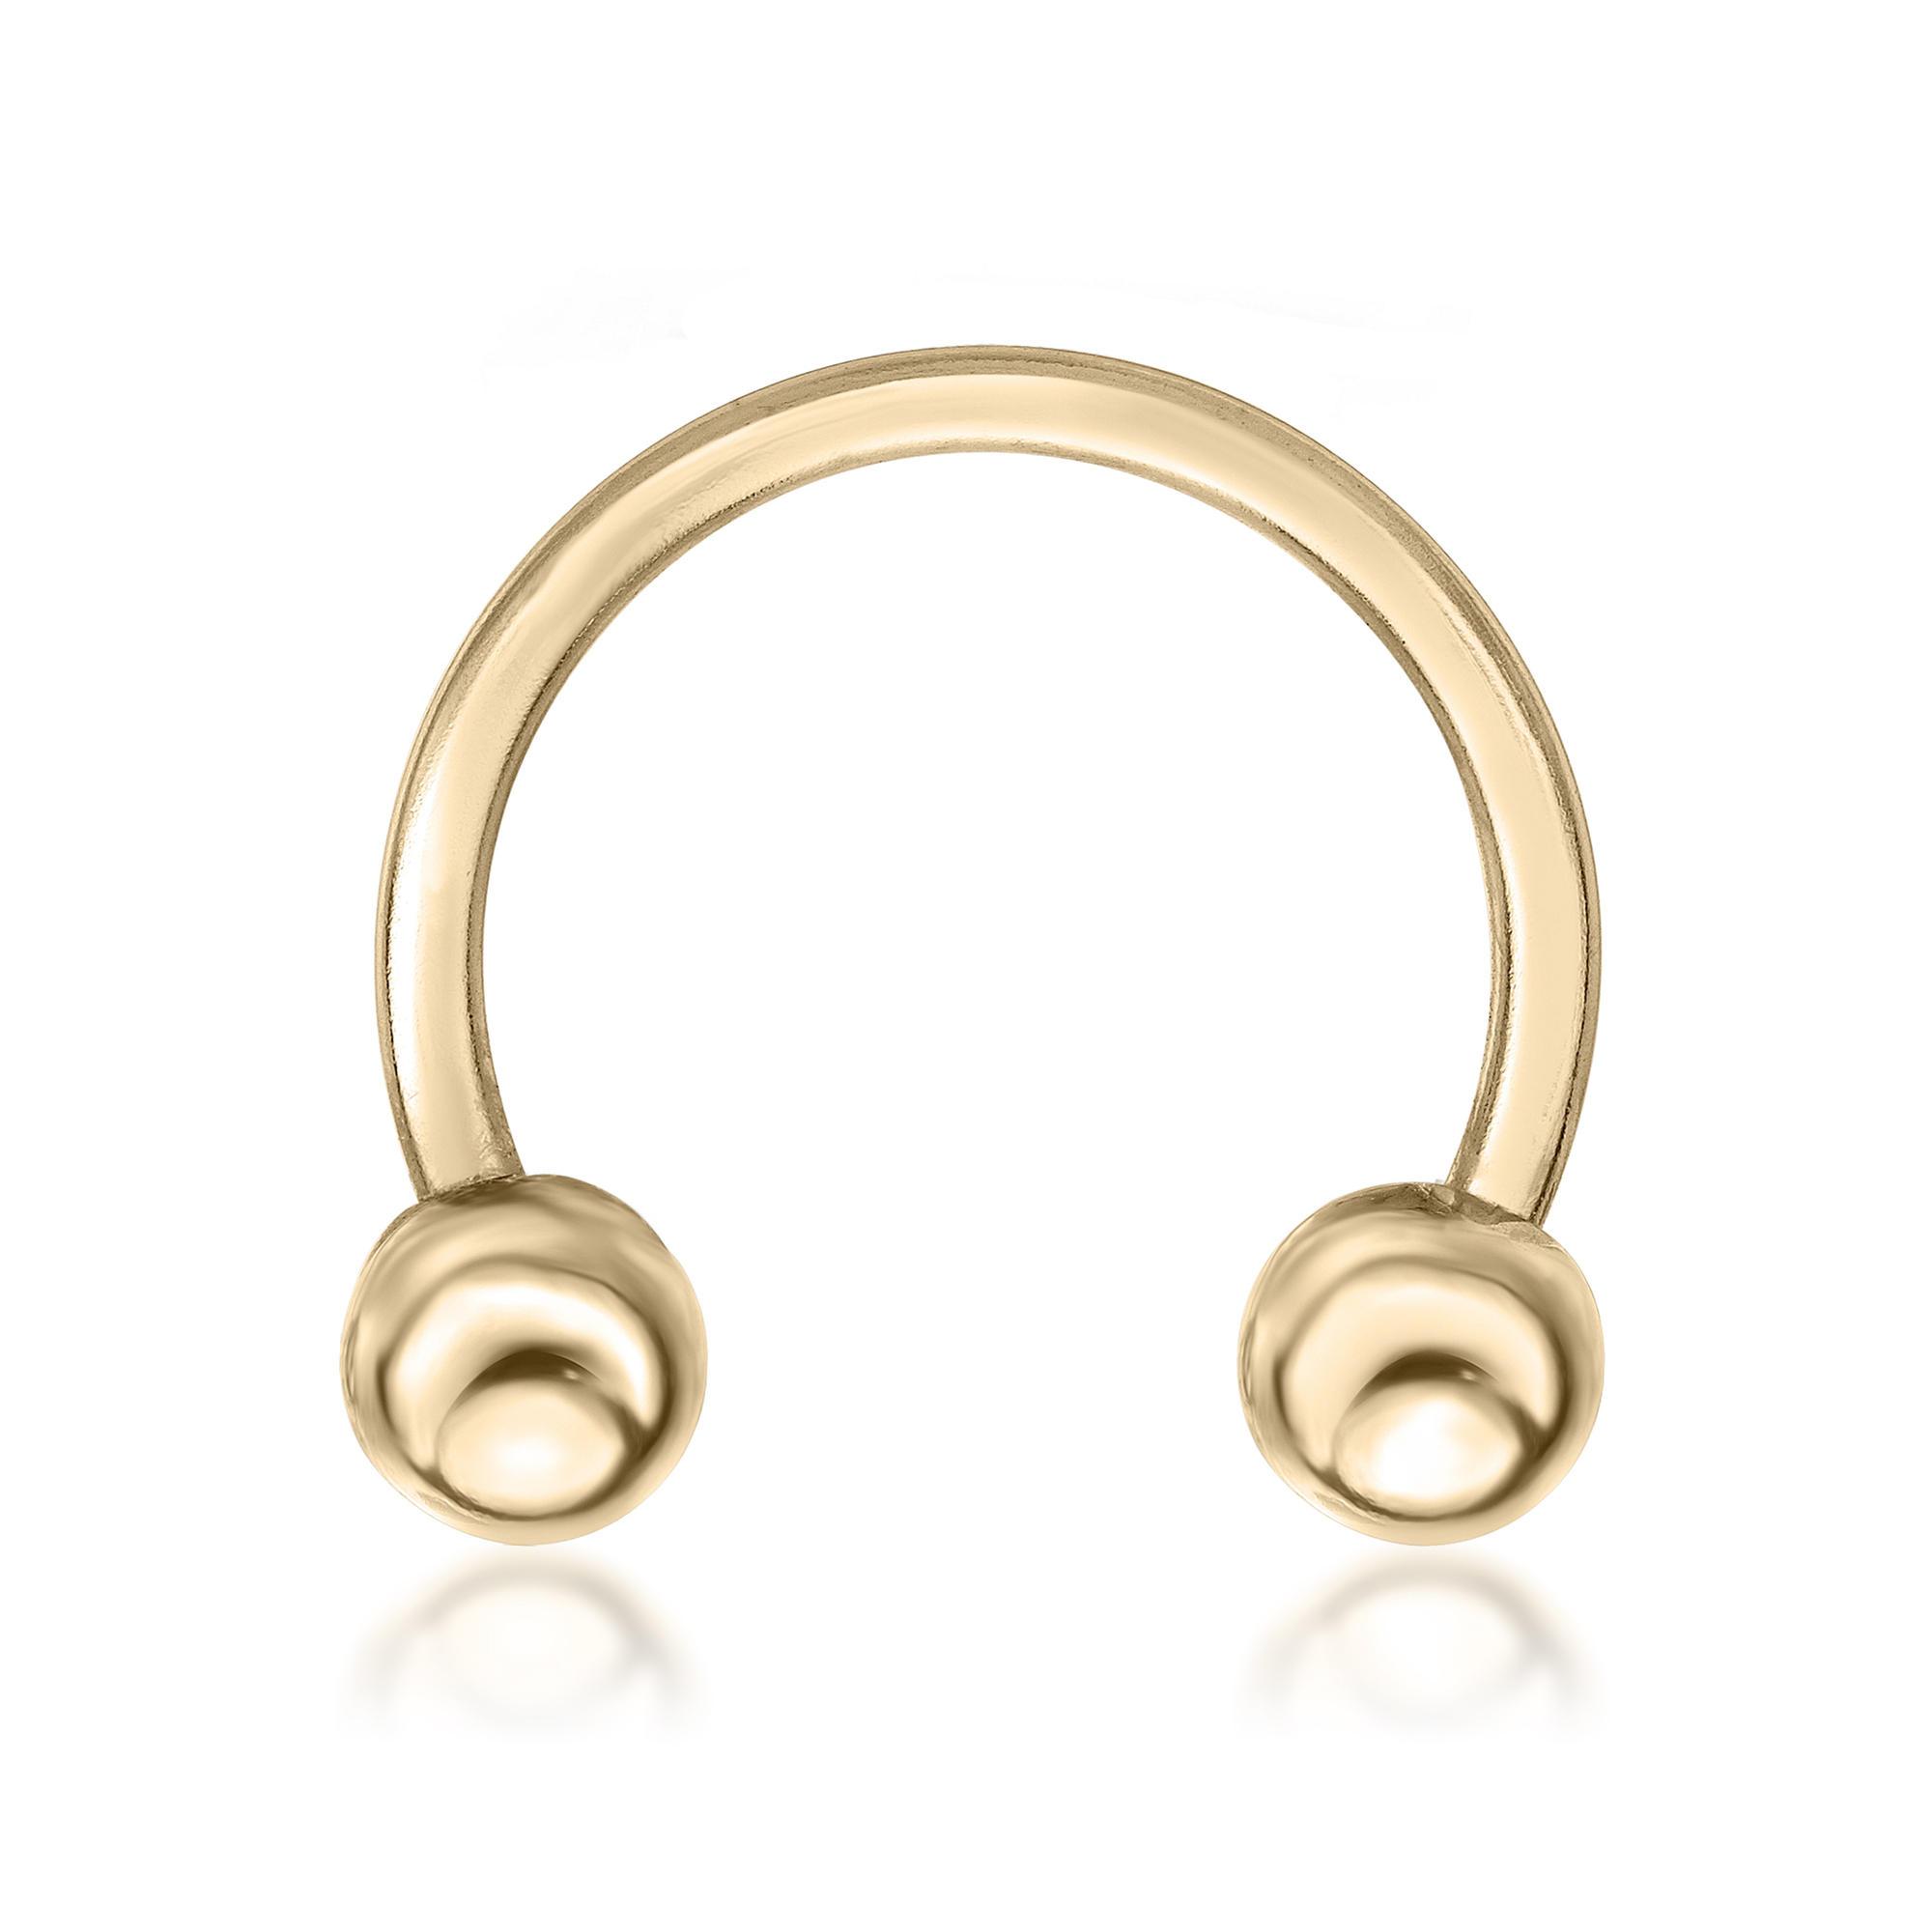 Lavari Jewelers Women's Horseshoe Universal Hoop Ring, 14K Yellow Gold, 1/2 Inches, 14 Gauge